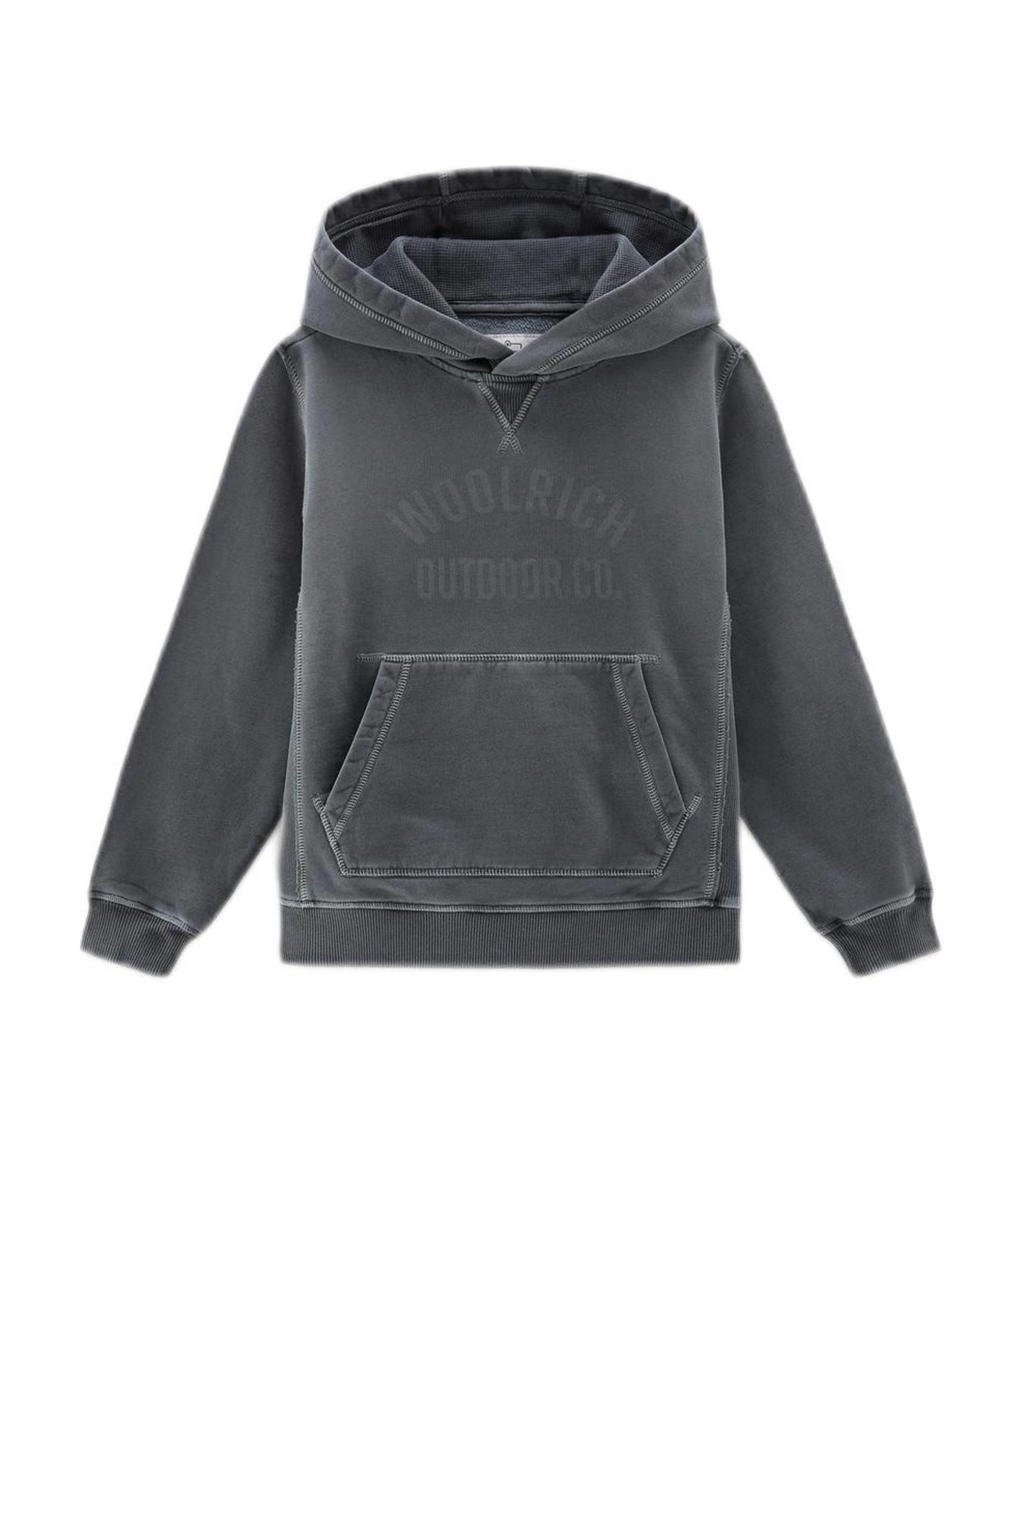 Zwarte jongens Woolrich hoodie van sweat materiaal met logo dessin, lange mouwen en capuchon